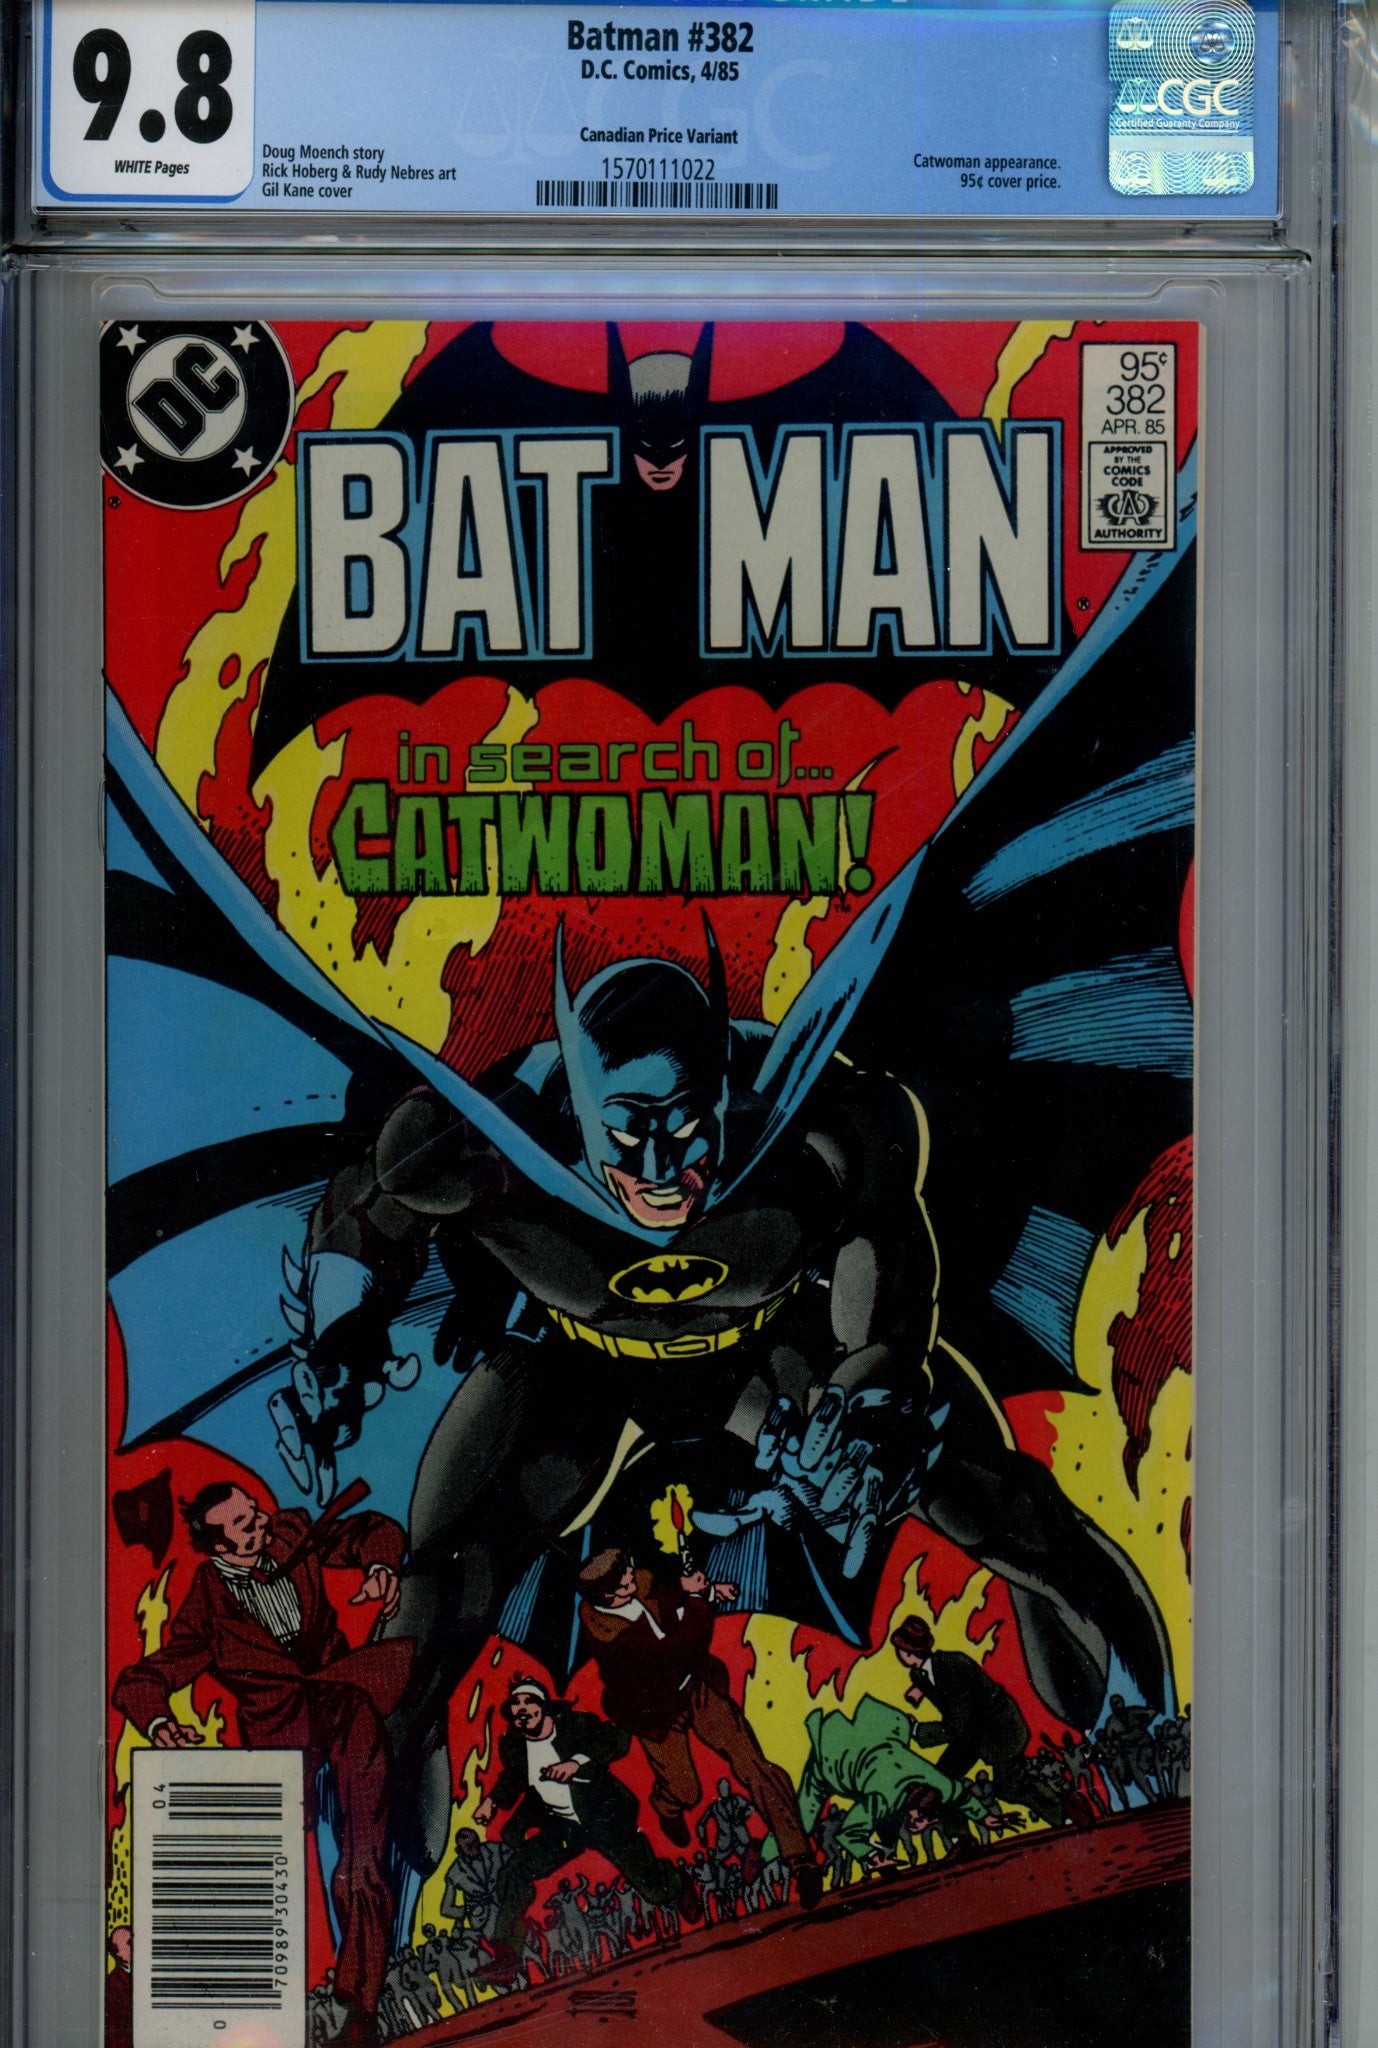 Batman Vol 1 382 CGC 9.8 (1984)